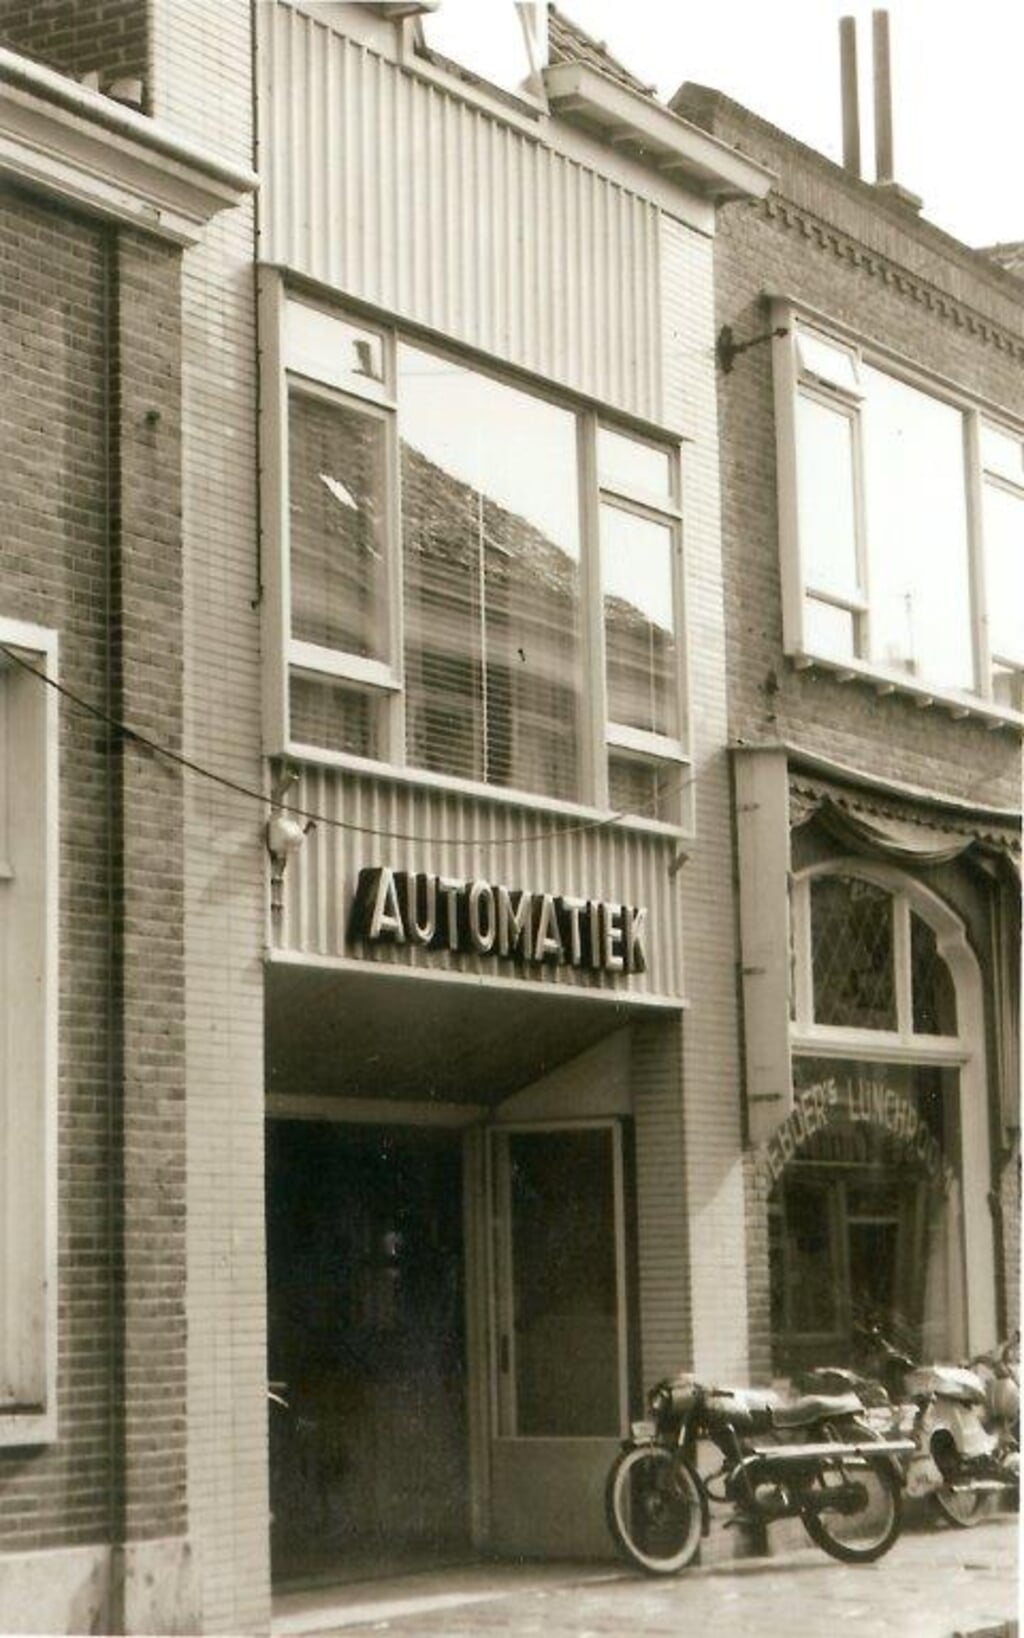  Automatiek A.C. de Boer in de Koningstraat genoot o.a. bekendheid door de eigen mayonaise. 